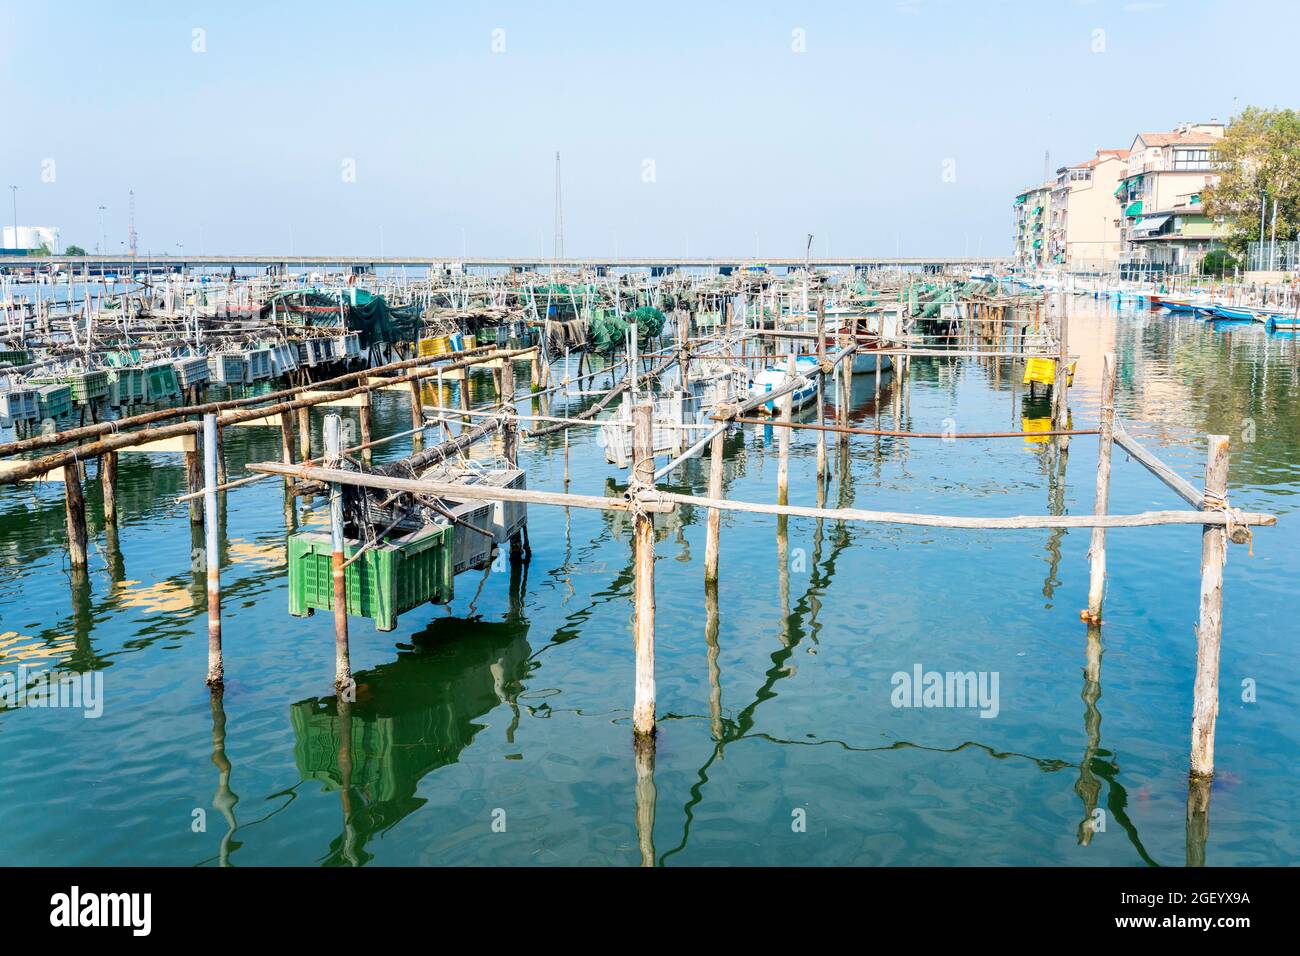 Attrezzature da pesca nel porto di Chioggia, regione Veneto, Italia, Foto Stock